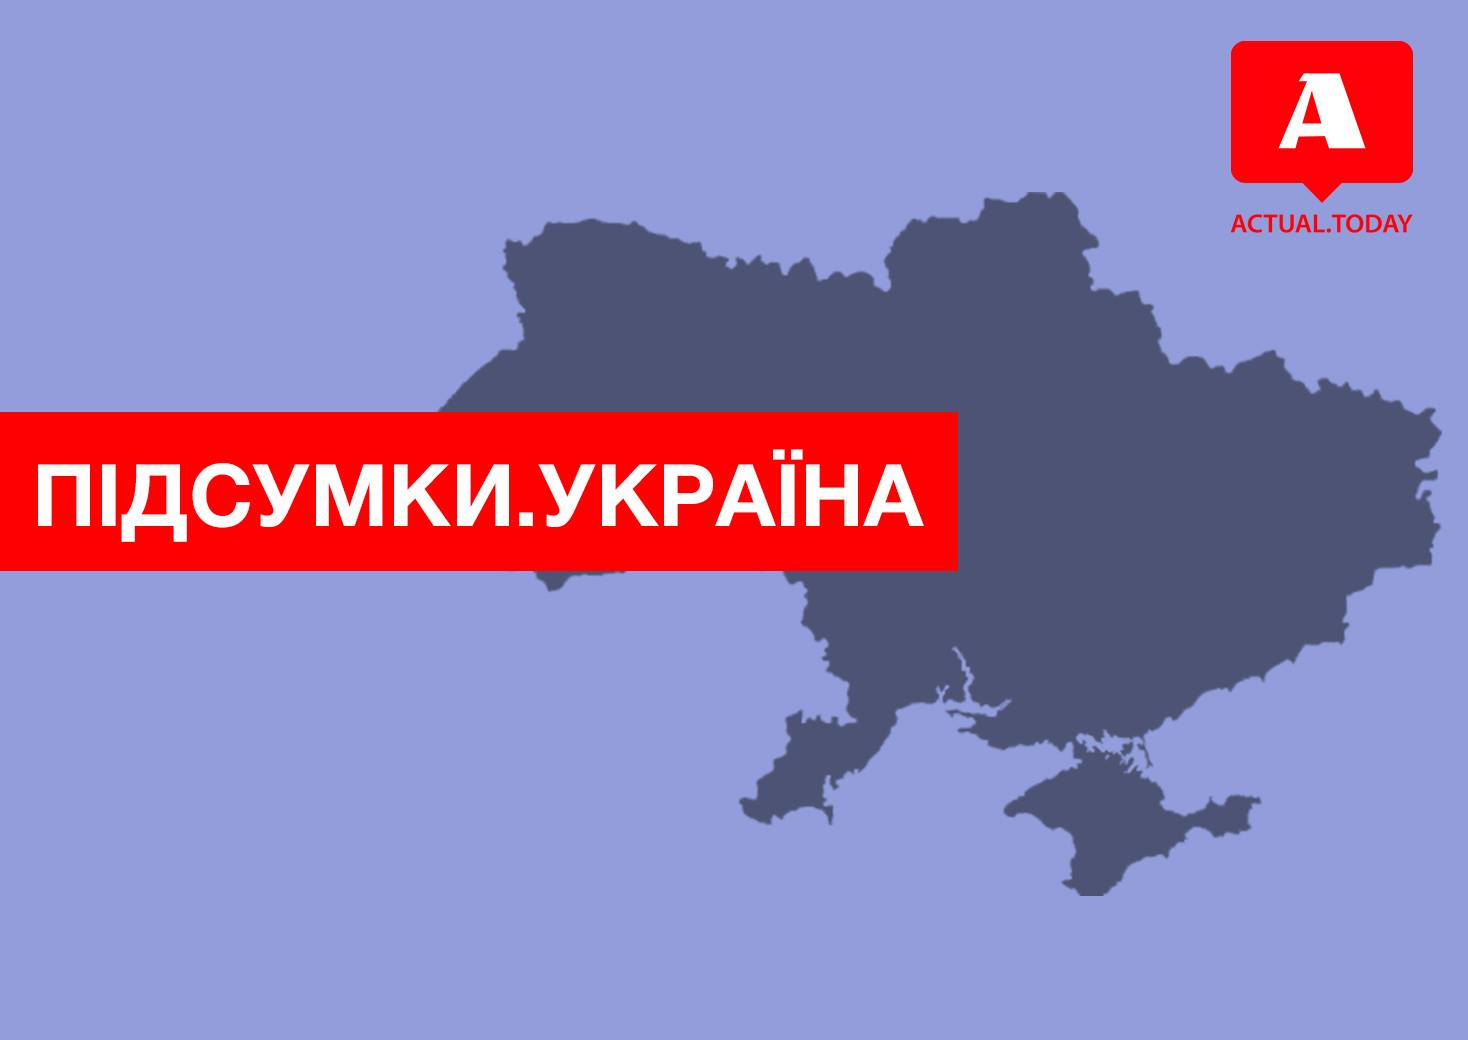 Восстановление сообщения с Донбассом, отставка Луценко, выборы неизбежны – главные новости Украины за вторник